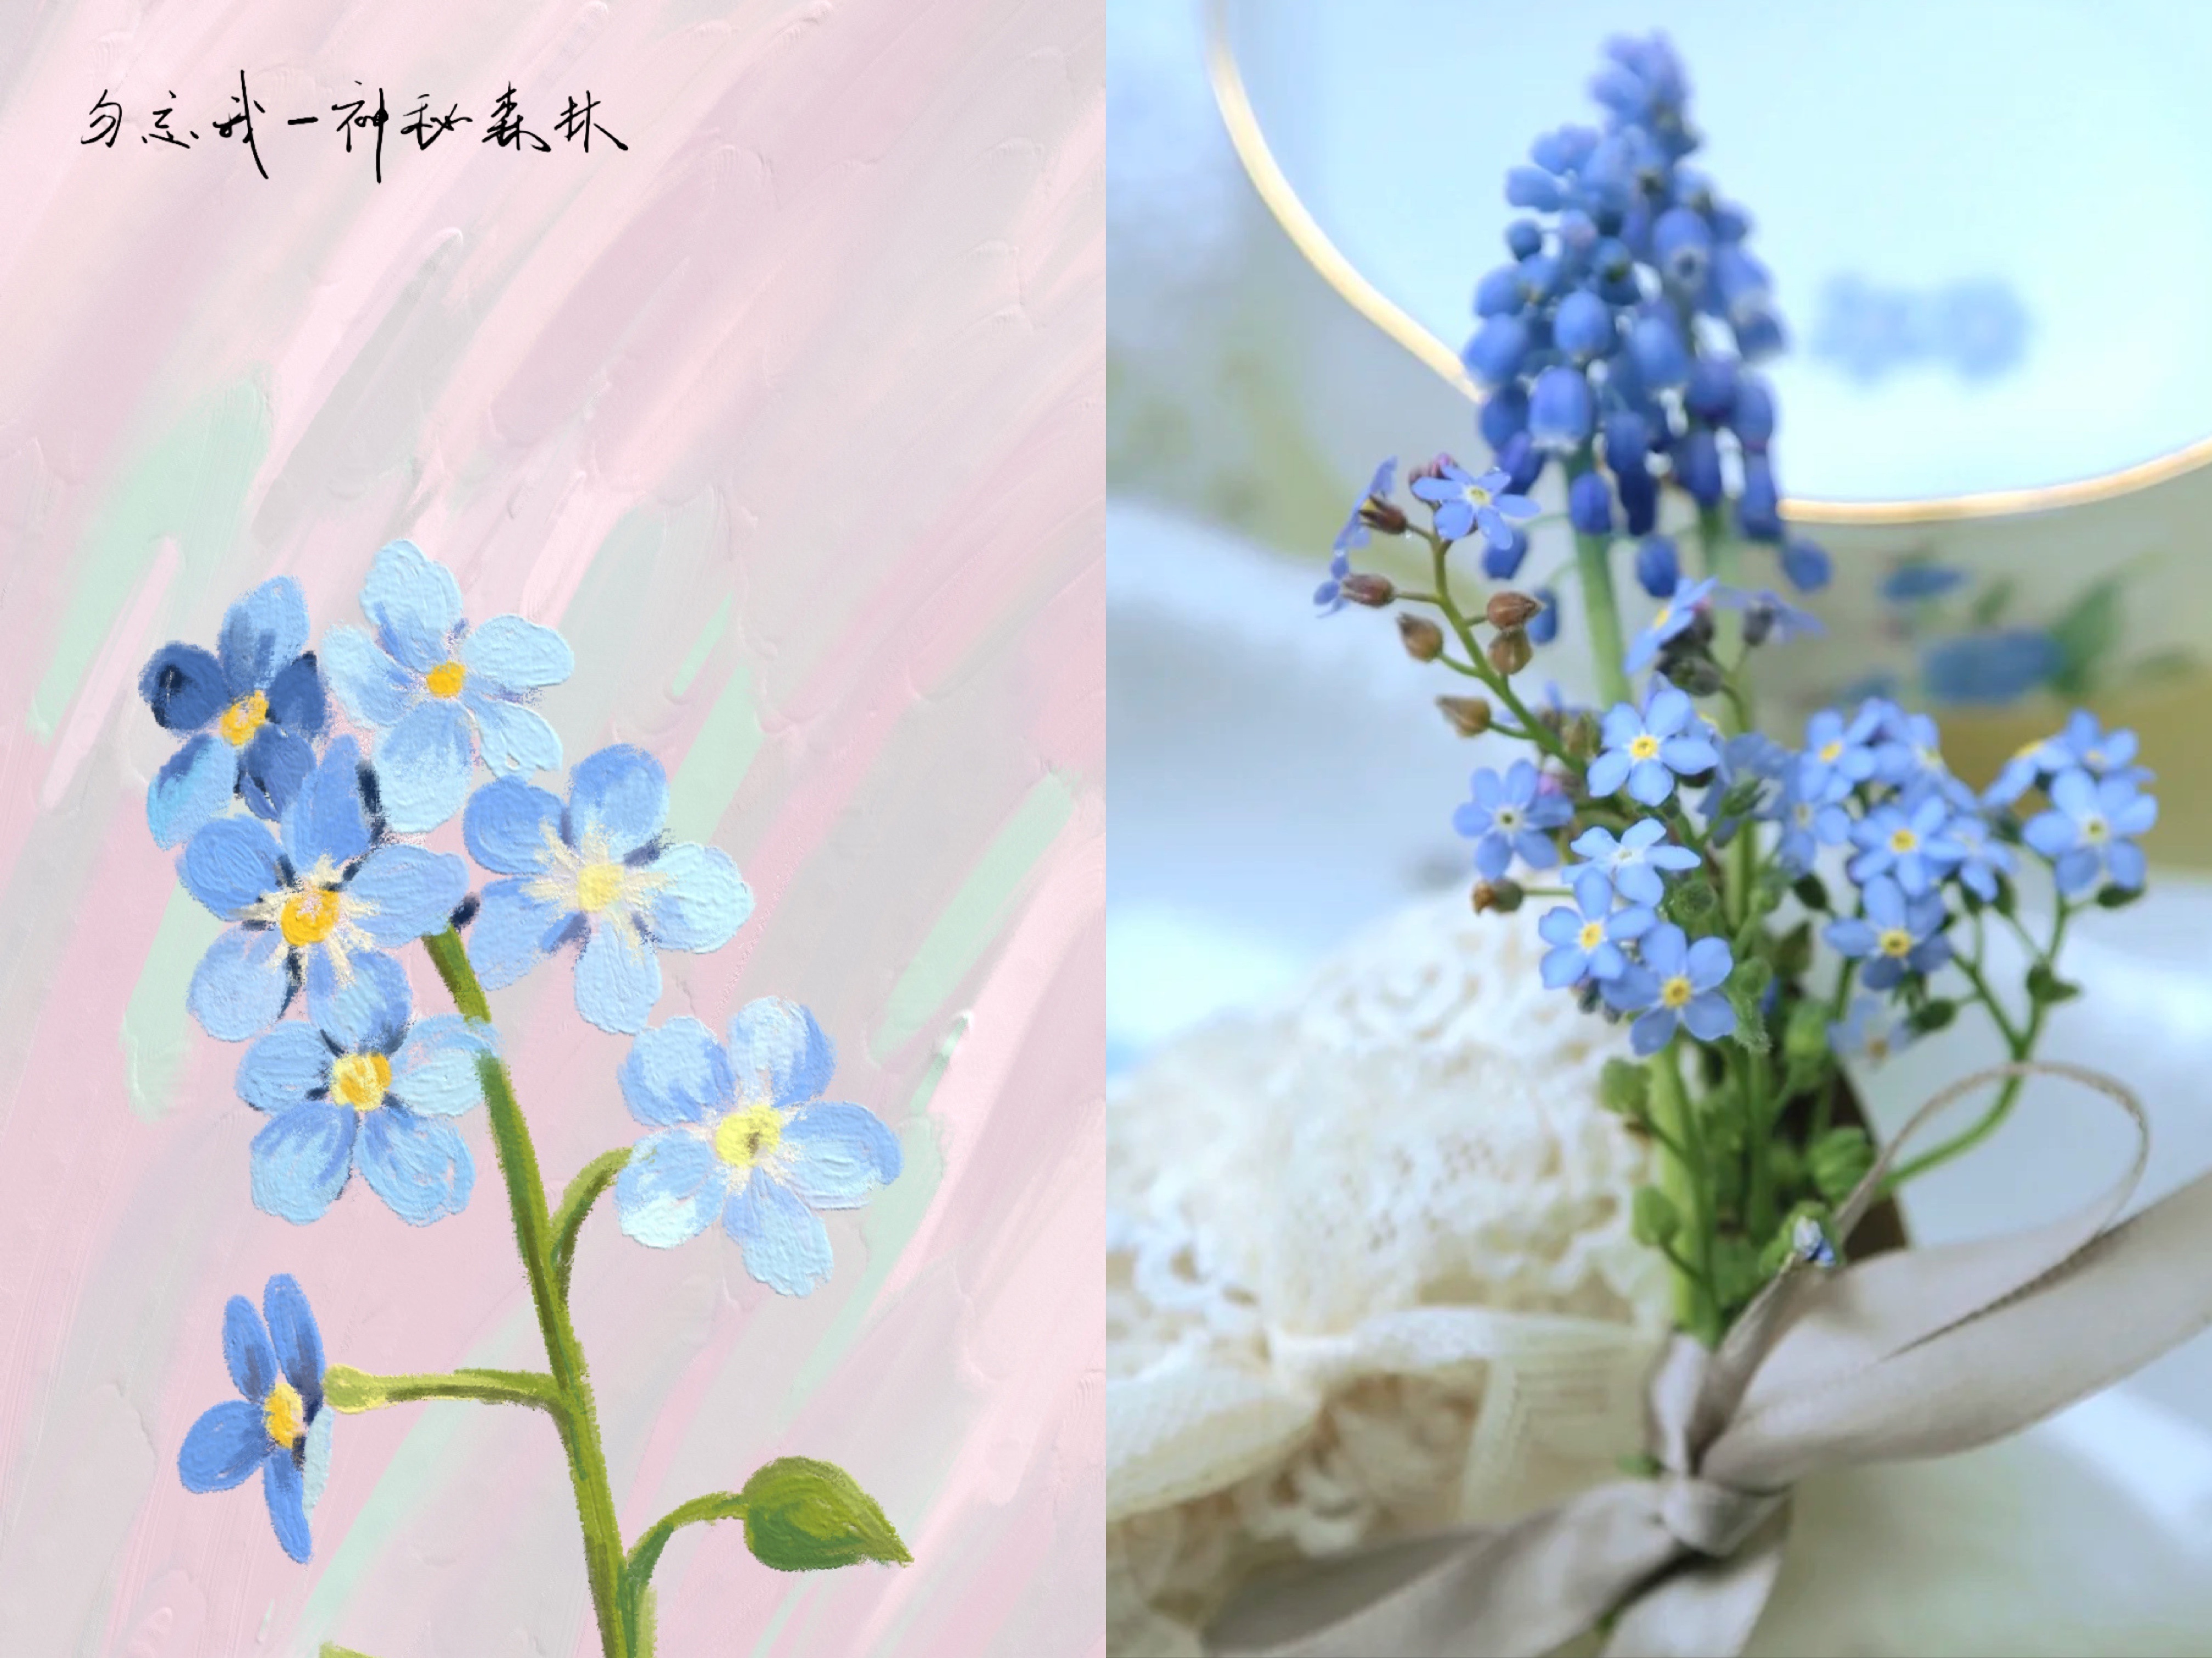 王源手写夏野了花种花名 手写传递真心 粉丝用针织永久保存 资讯咖